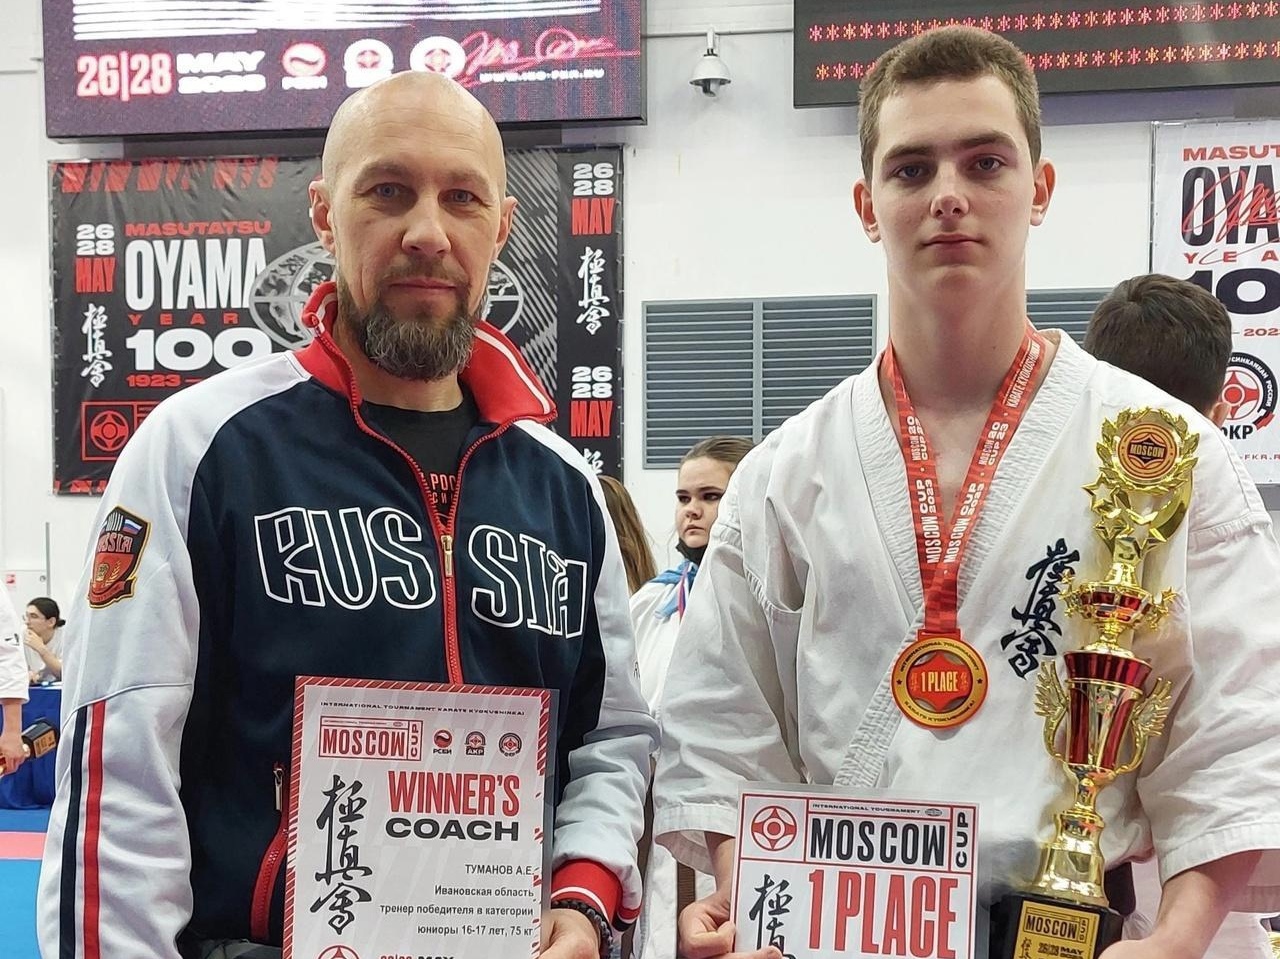 Даниил Павликов победил на международных соревнованиях по киокусинкай Moscow Cup